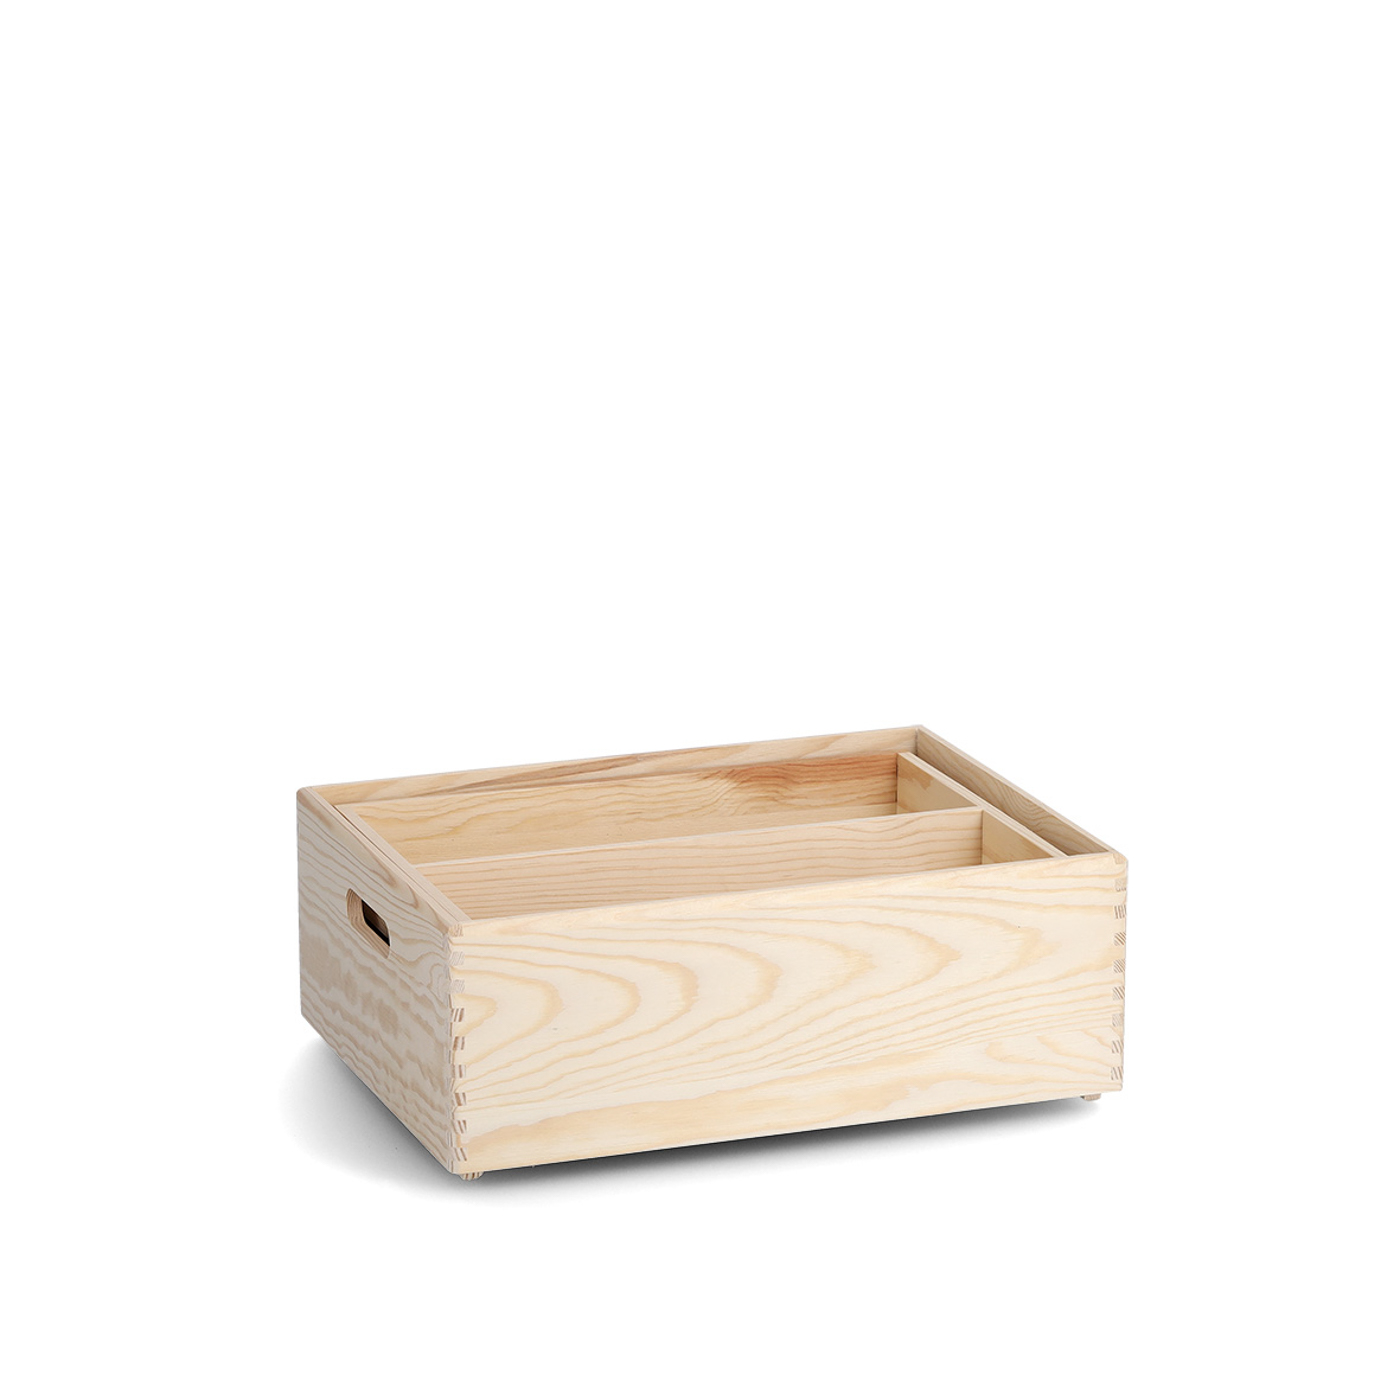 Allzweckkisten-Set, Nadelholz, Farbe: natur. Dieses praktische Kisten-Set mit Fächer-Einteilung und Tabletteinsatz ist ein